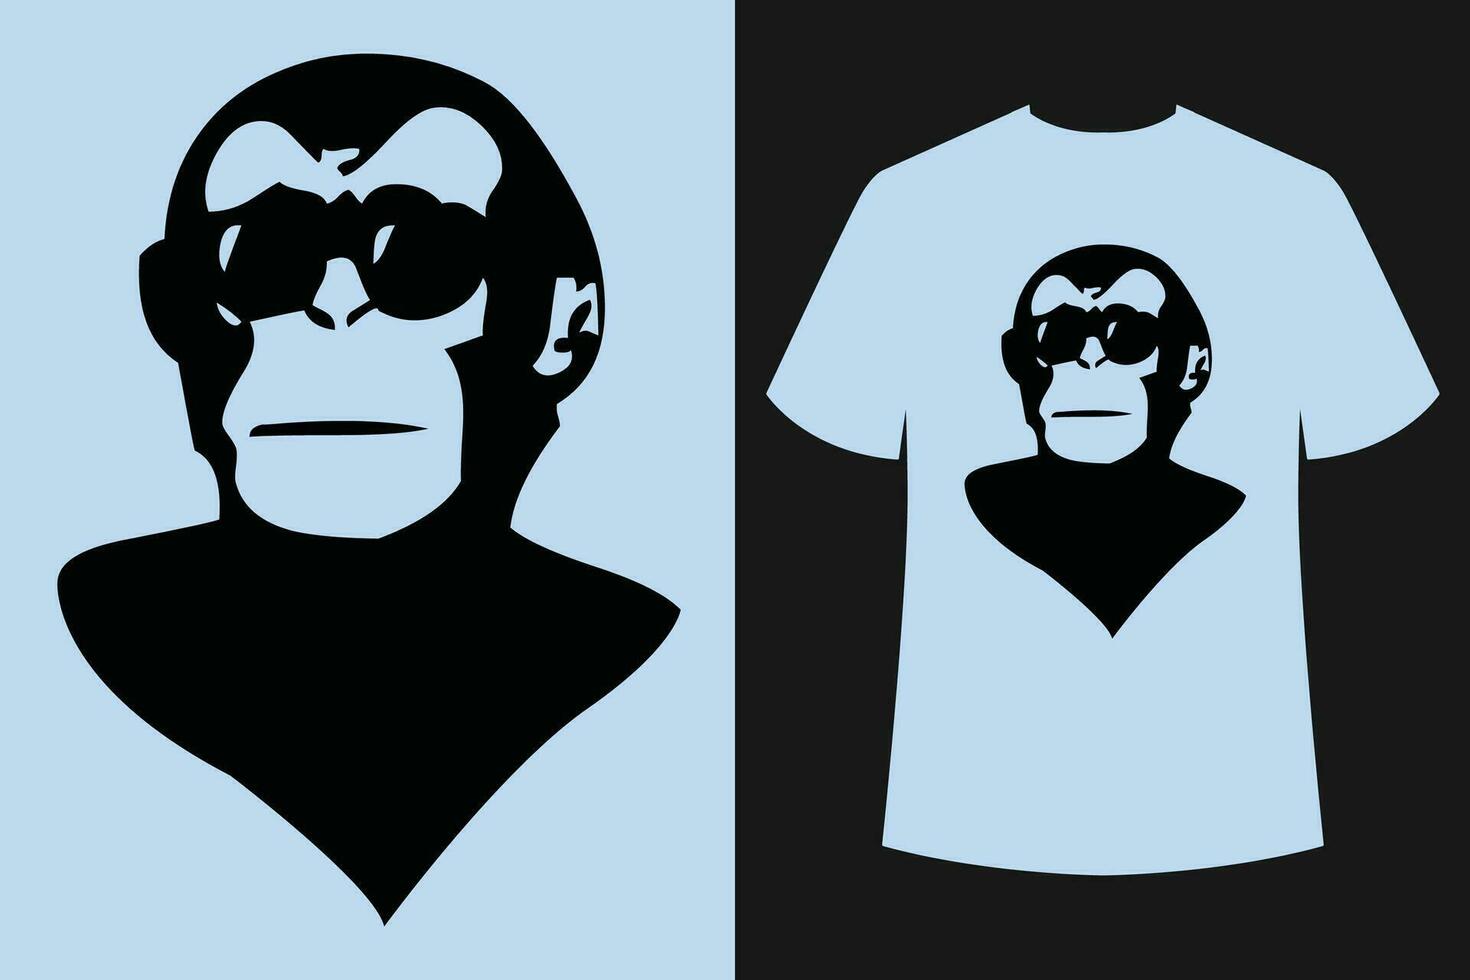 singe et gorille T-shirt conception vecteur